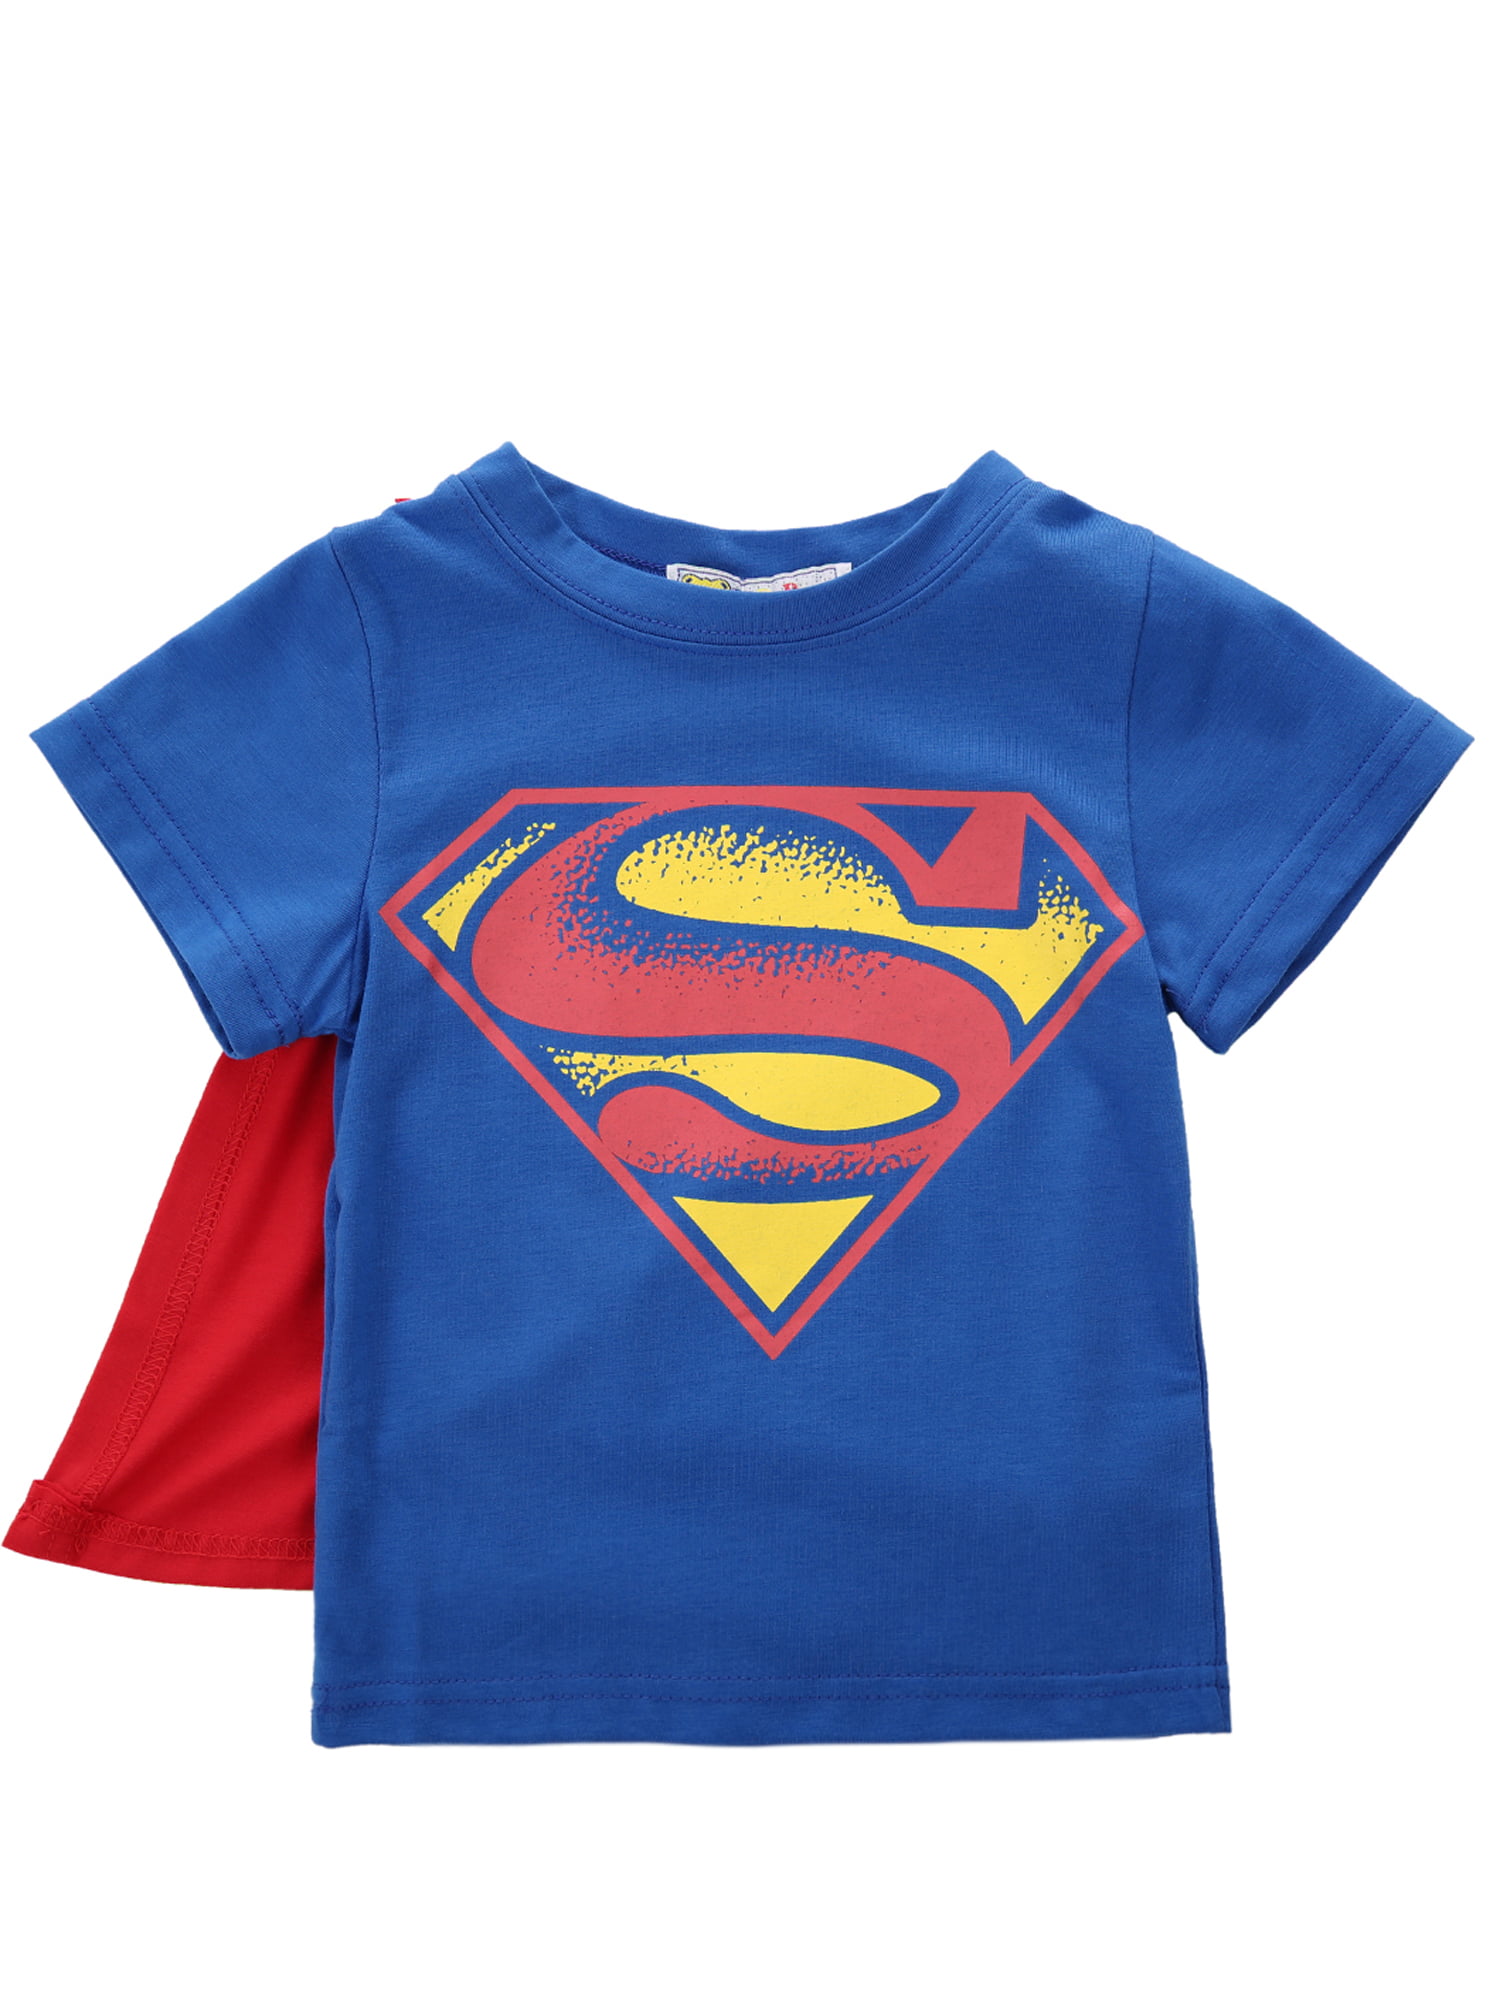 Enfants Filles Garçons Superman Batman Cap manches longues T Shirt Tops 